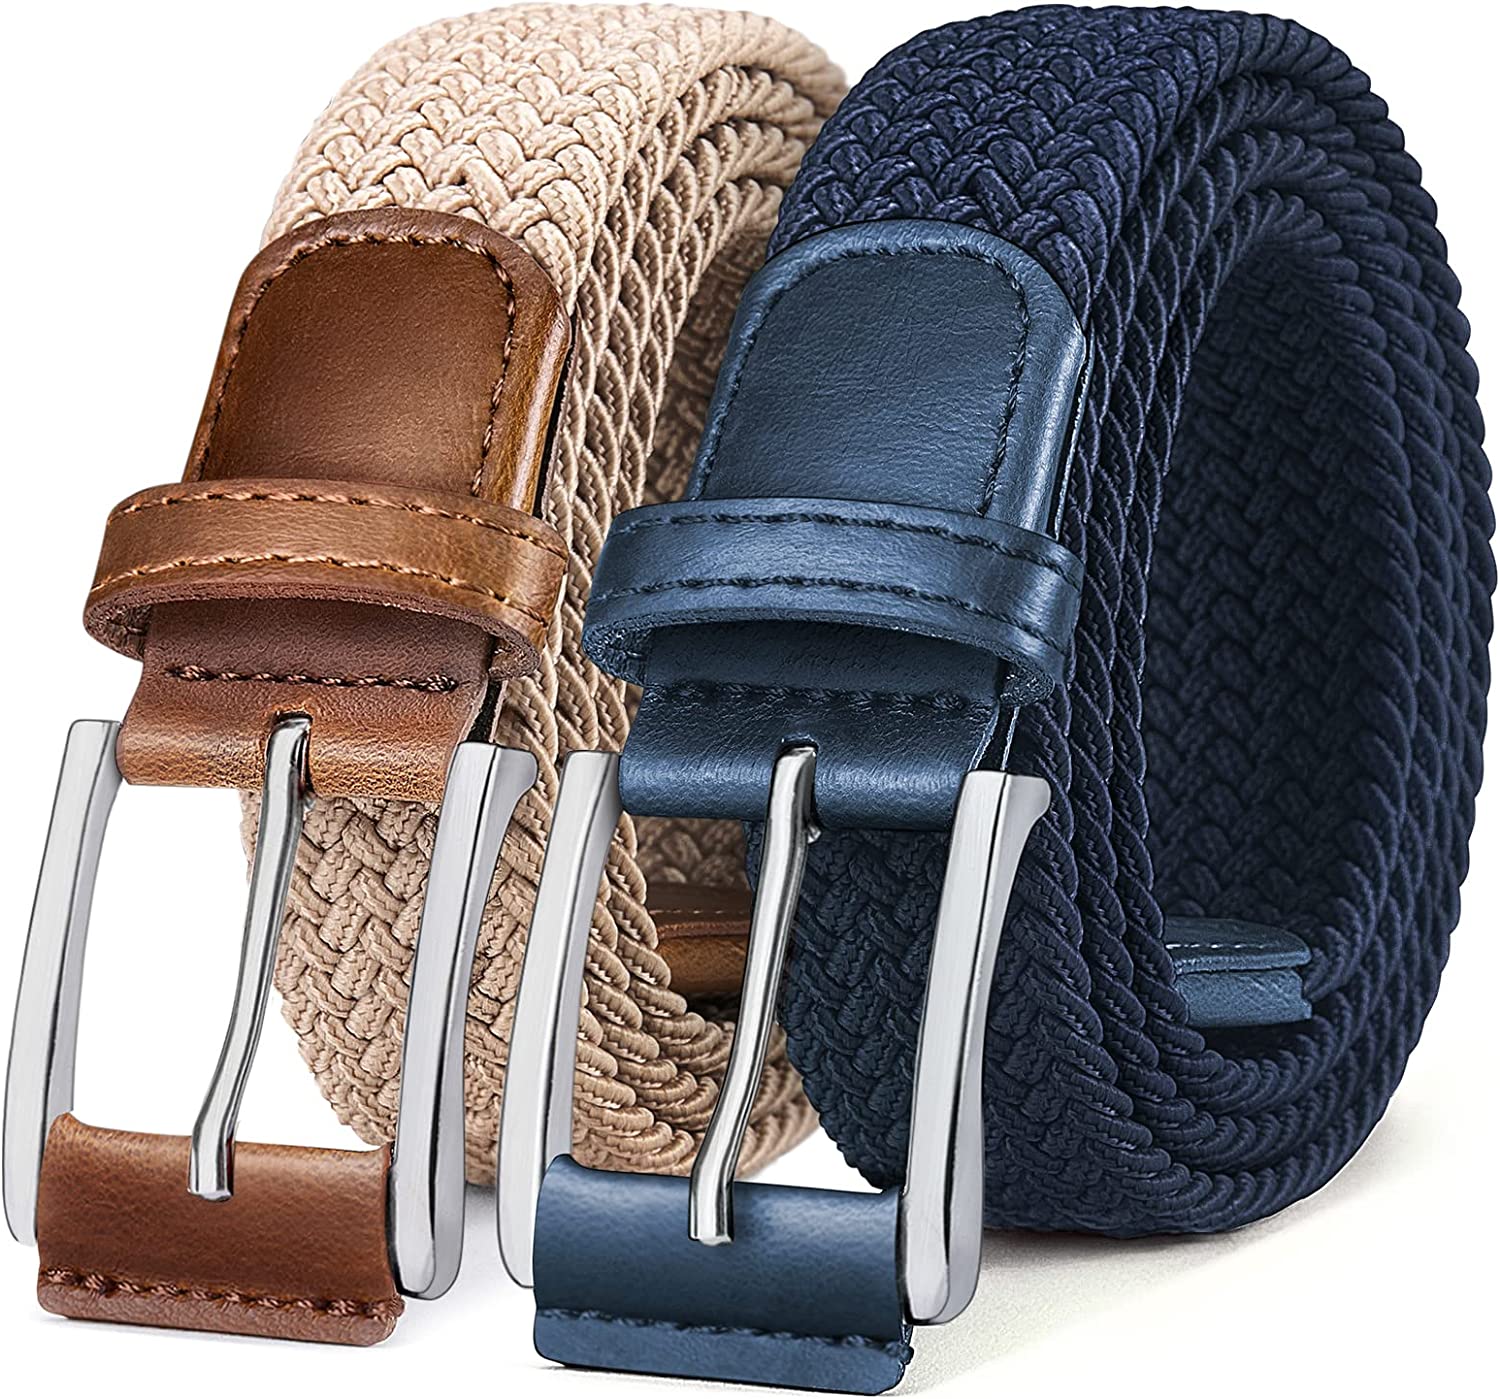 Bulliant Belt For Men 2pack Mens Stretch Braided Web Belt Elastic For